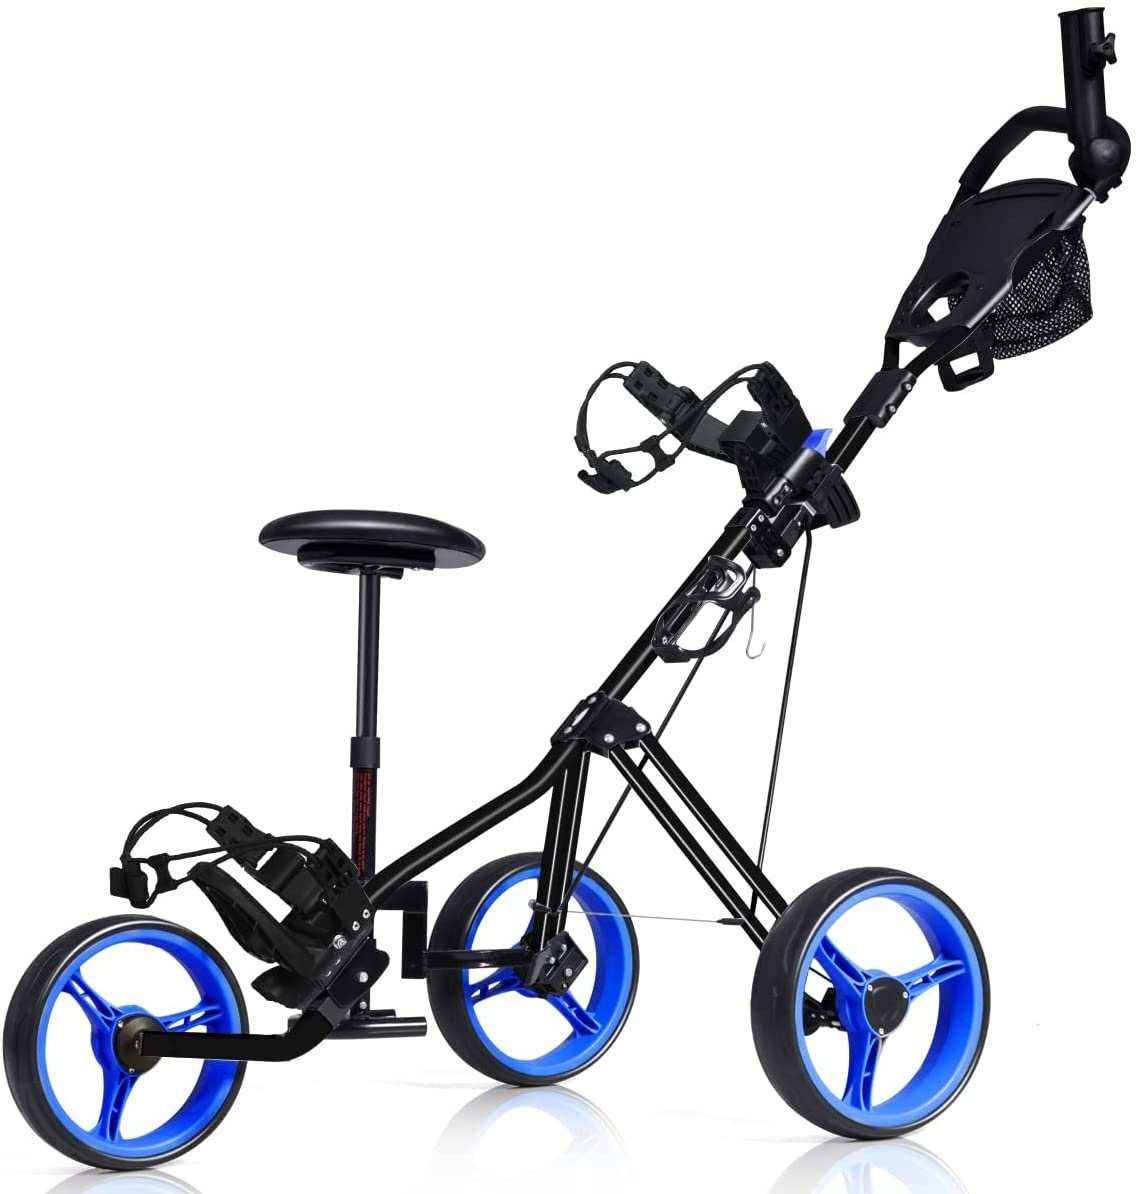 COSTWAY Golftrolley 3-Rad Golfwagen, klappbar, mit verstellbarem Sitz, Griff blau | Sport-Trolleys